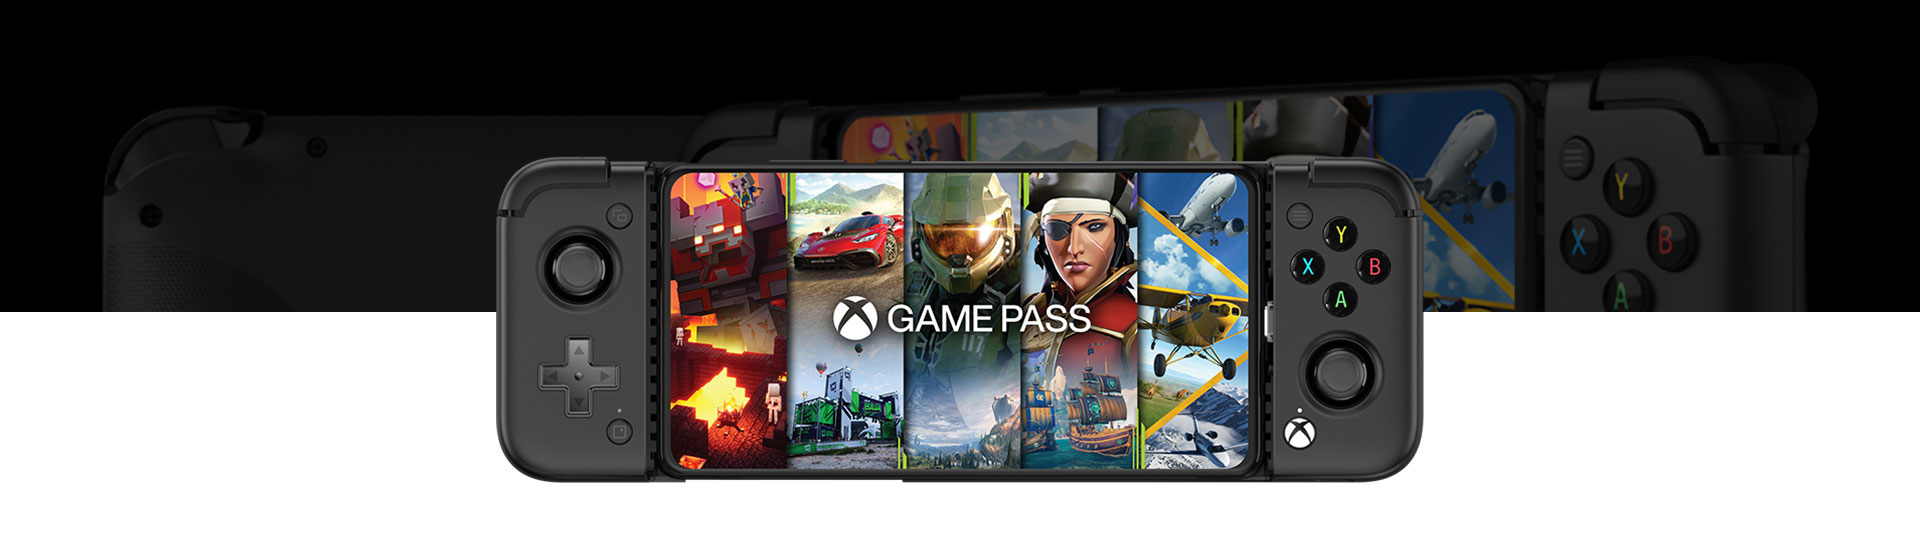 Vue de face de la manette de jeu mobile GameSir X2 Pro avec le Game Pass affiché à l’écran